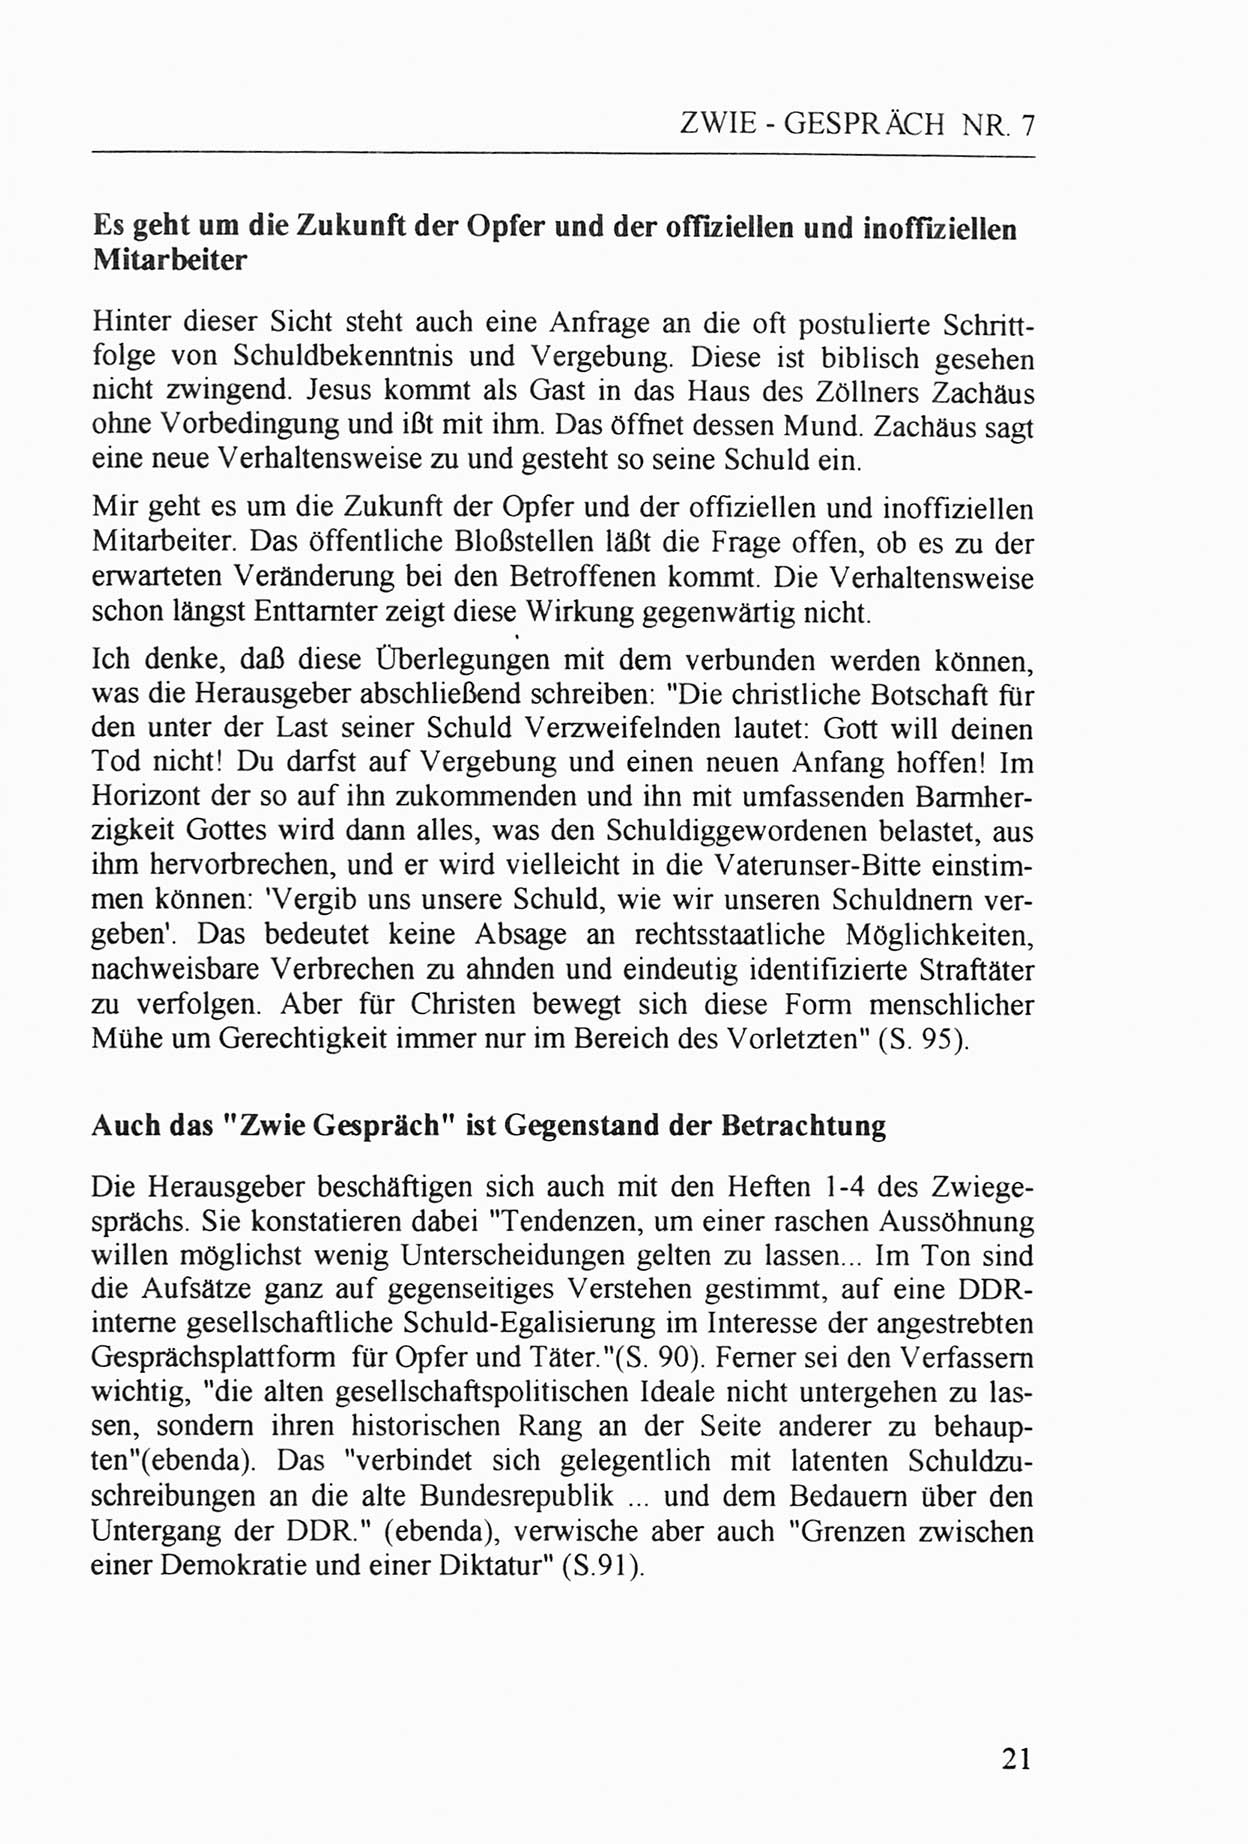 Zwie-Gespräch, Beiträge zur Aufarbeitung der Staatssicherheits-Vergangenheit [Deutsche Demokratische Republik (DDR)], Ausgabe Nr. 7, Berlin 1992, Seite 21 (Zwie-Gespr. Ausg. 7 1992, S. 21)